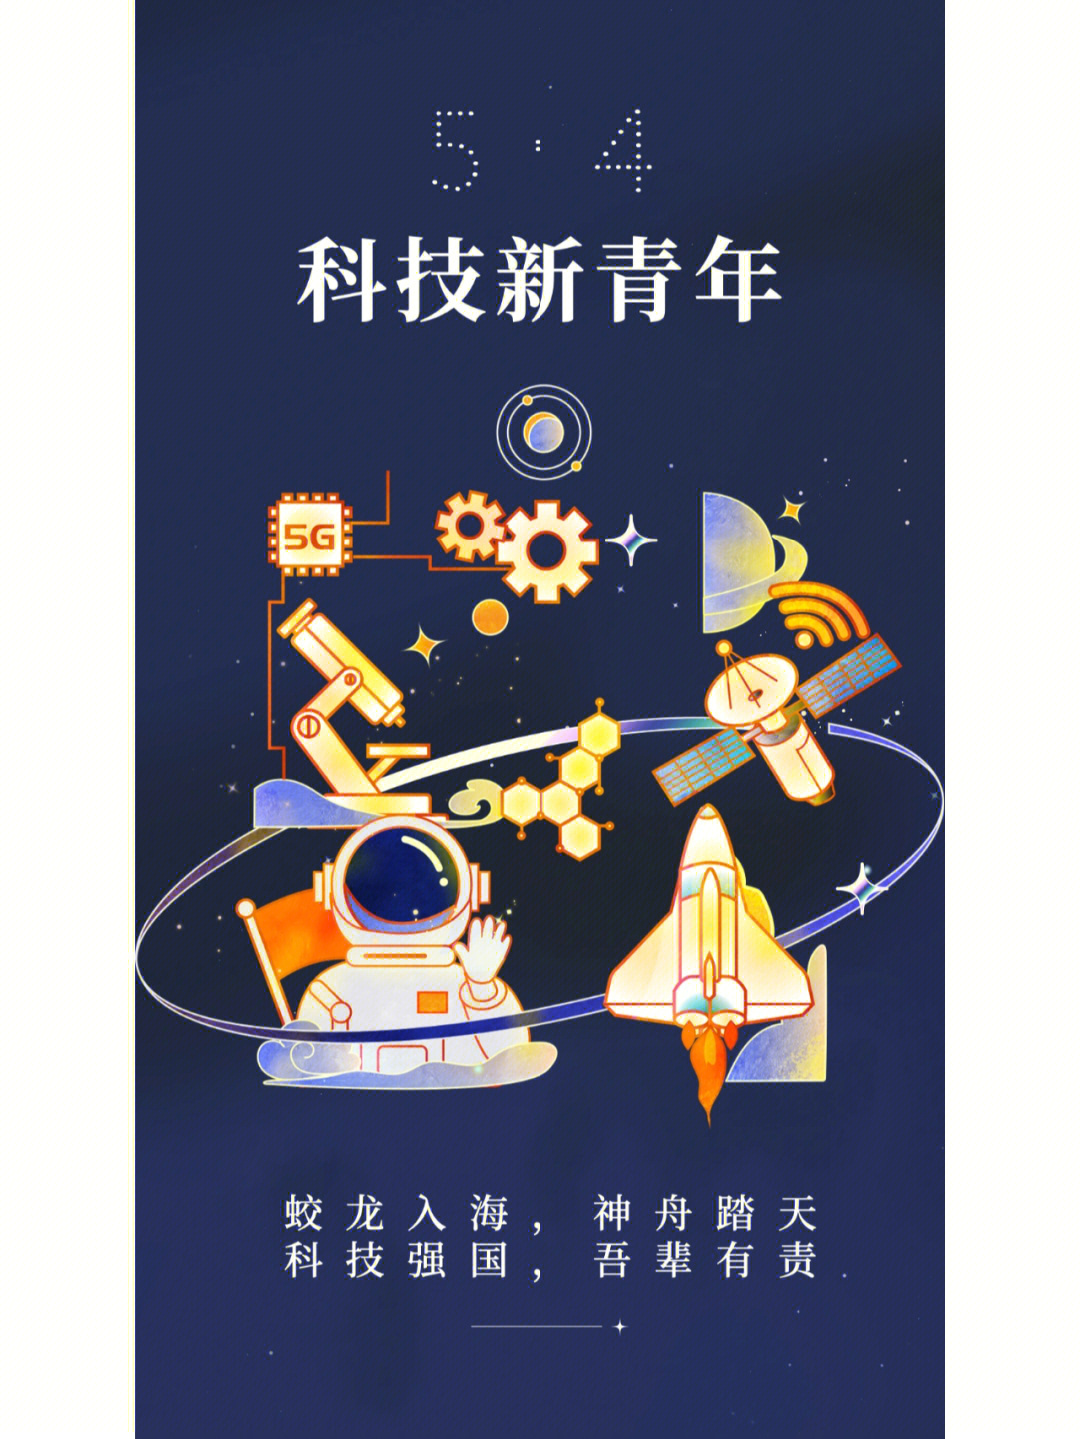 中国新青年卡面设计图片